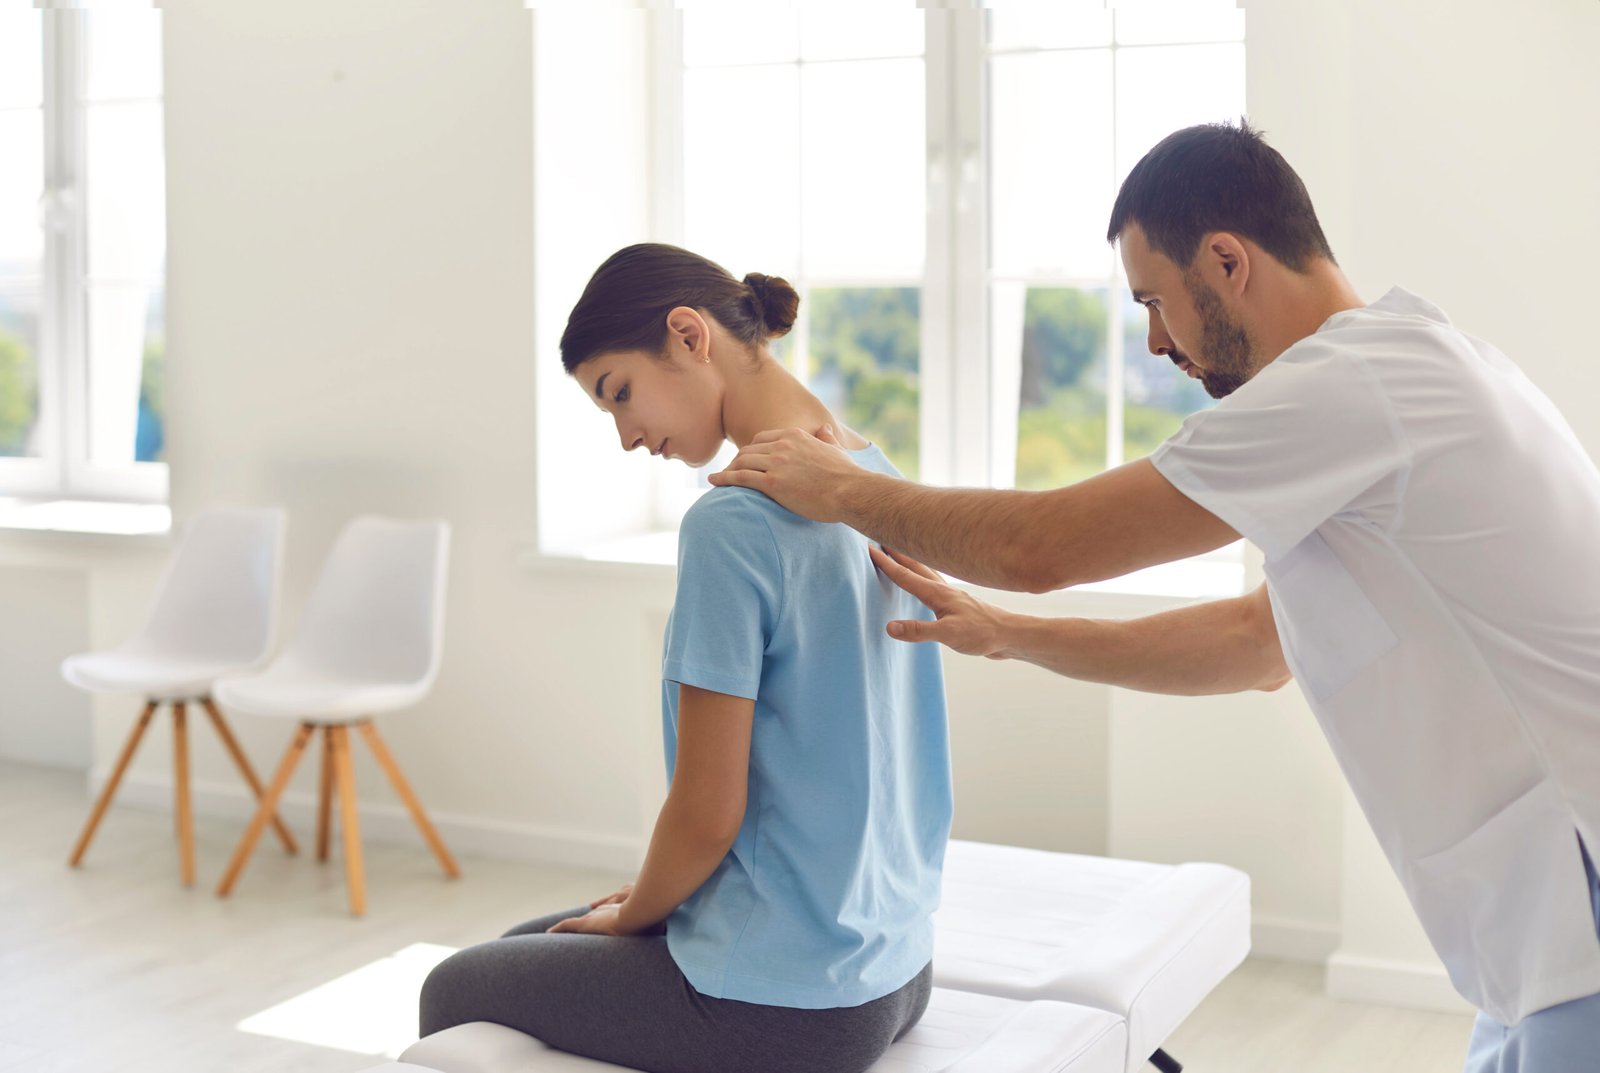 Fotografia de fisioterapeuta massageando as costas da paciente, que possui dores como a de discopatia degenerativa.